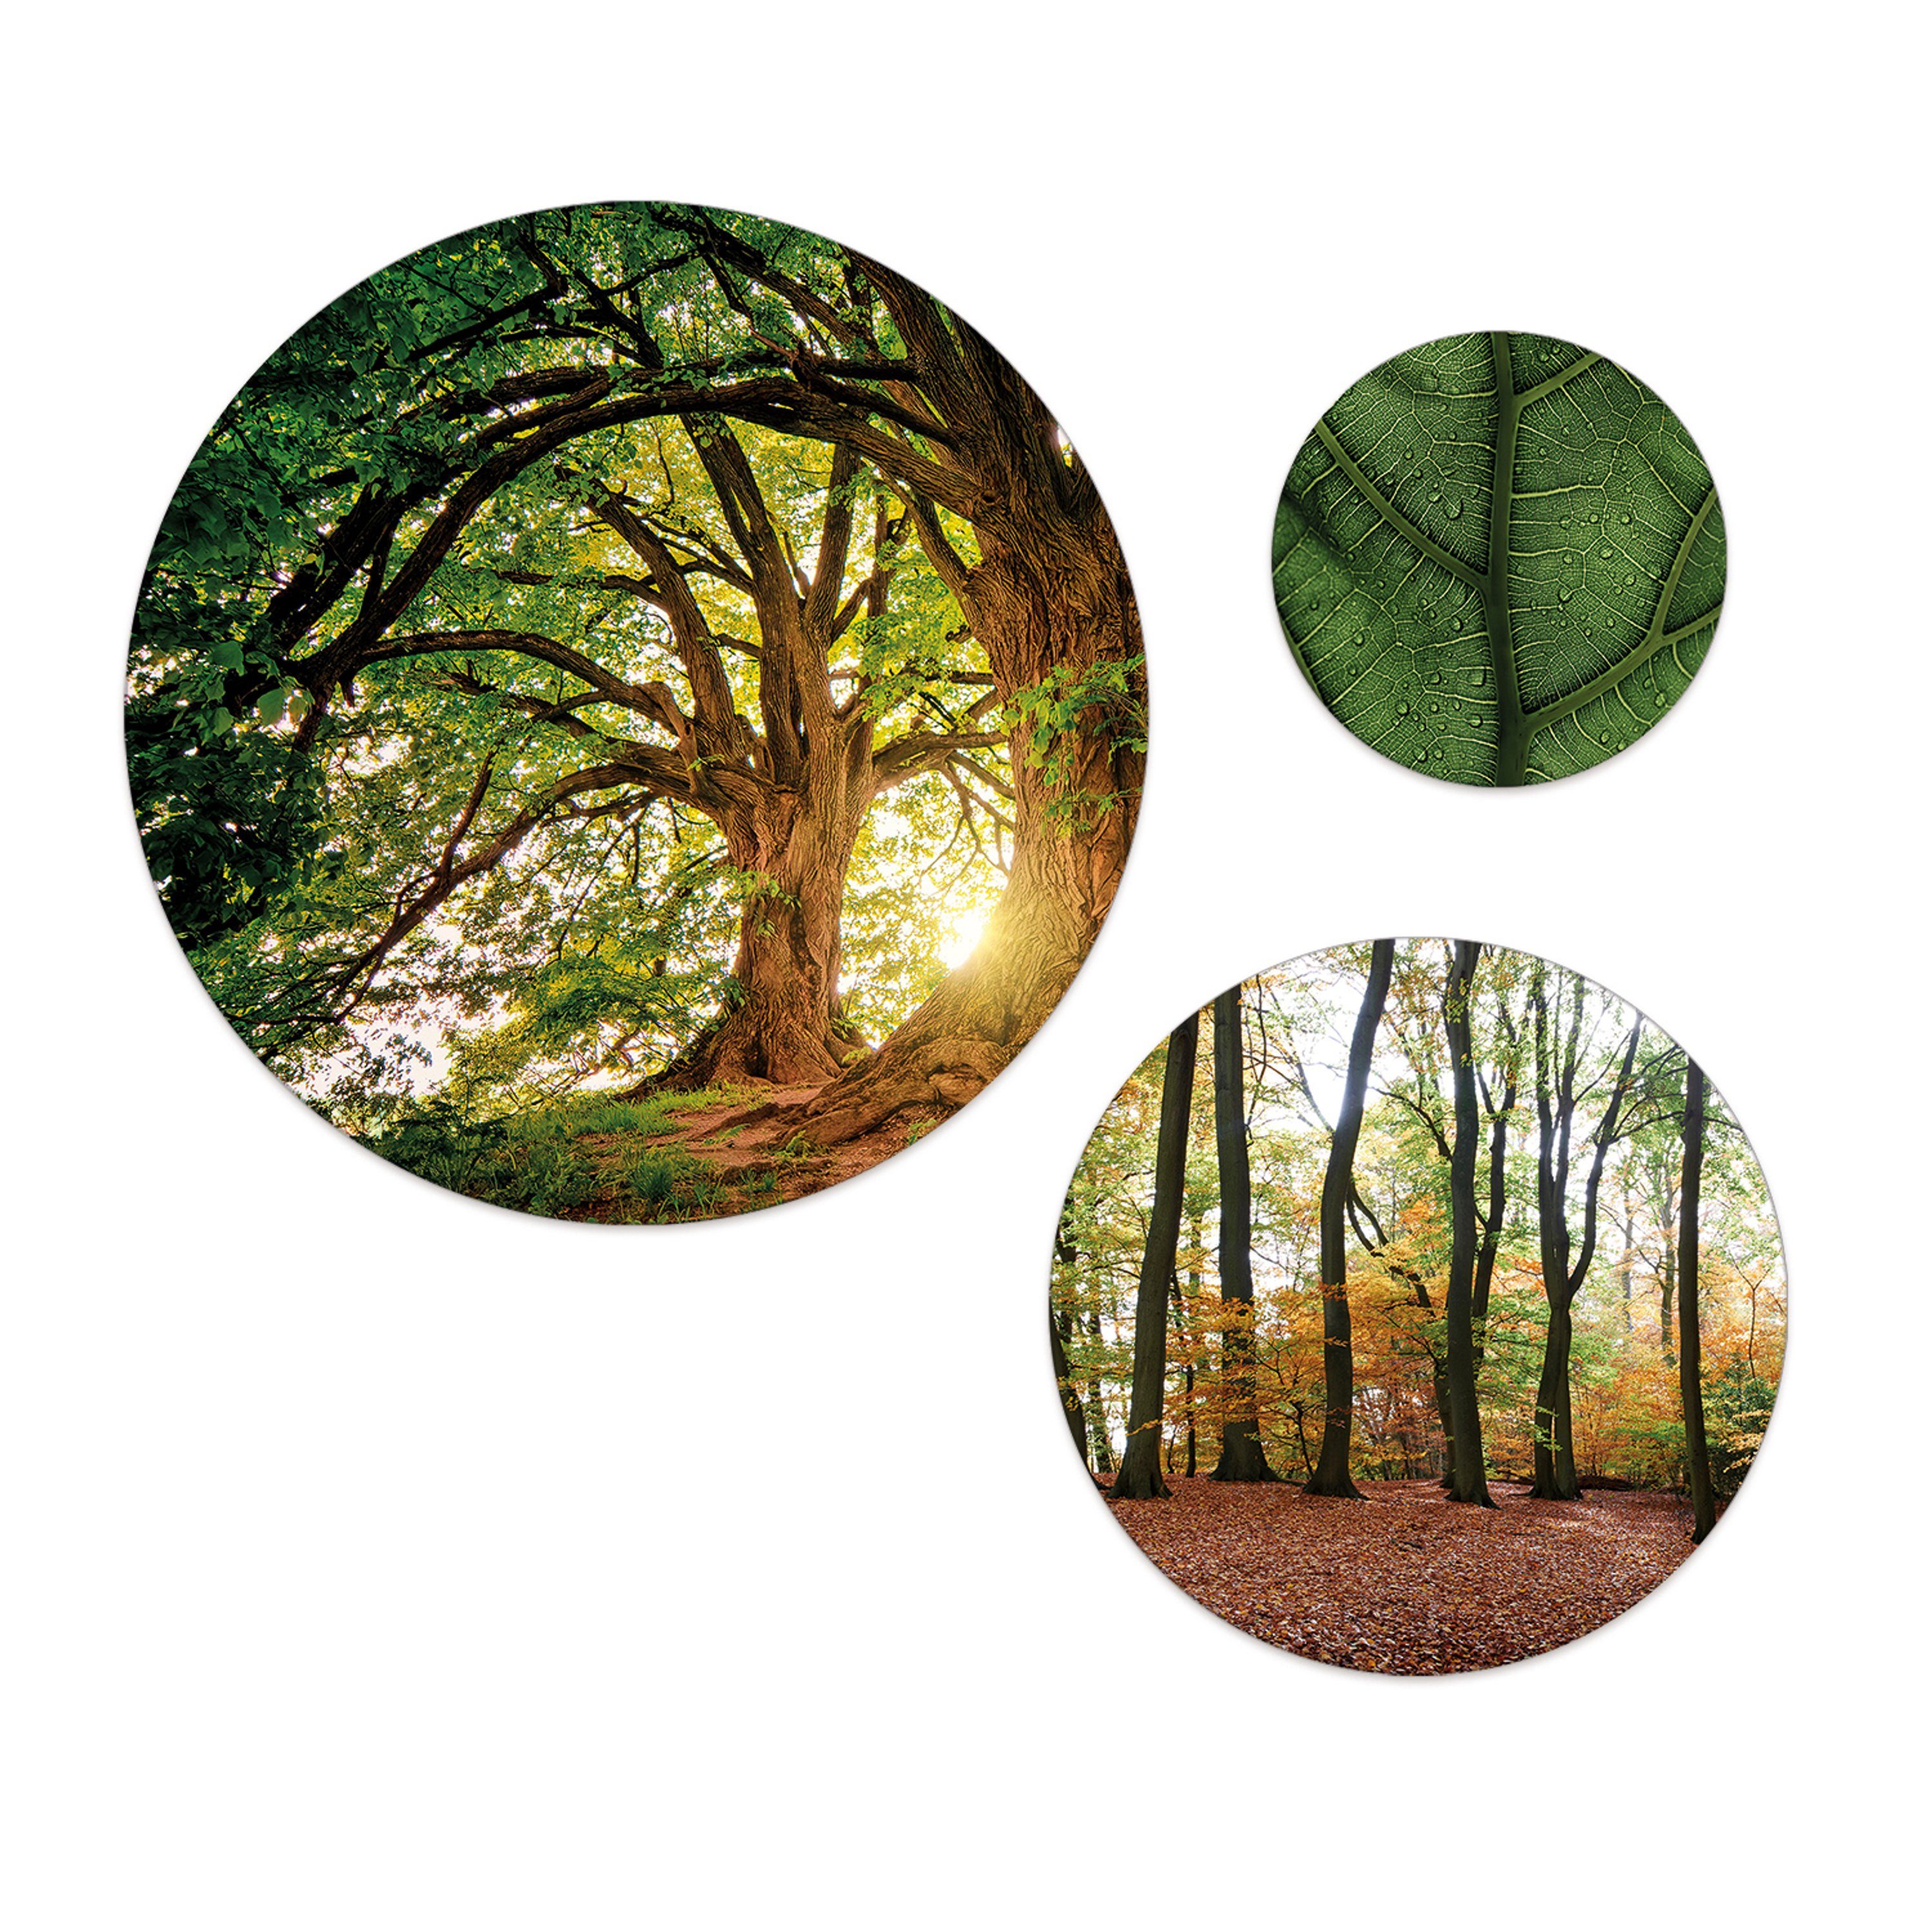 artissimo Mehrteilige Bilder mehrteiliges Bilder-Set 3 Wandbilder rund Wandkreise Wald und Bäume, Landschaft: Bäume und Blätter grün